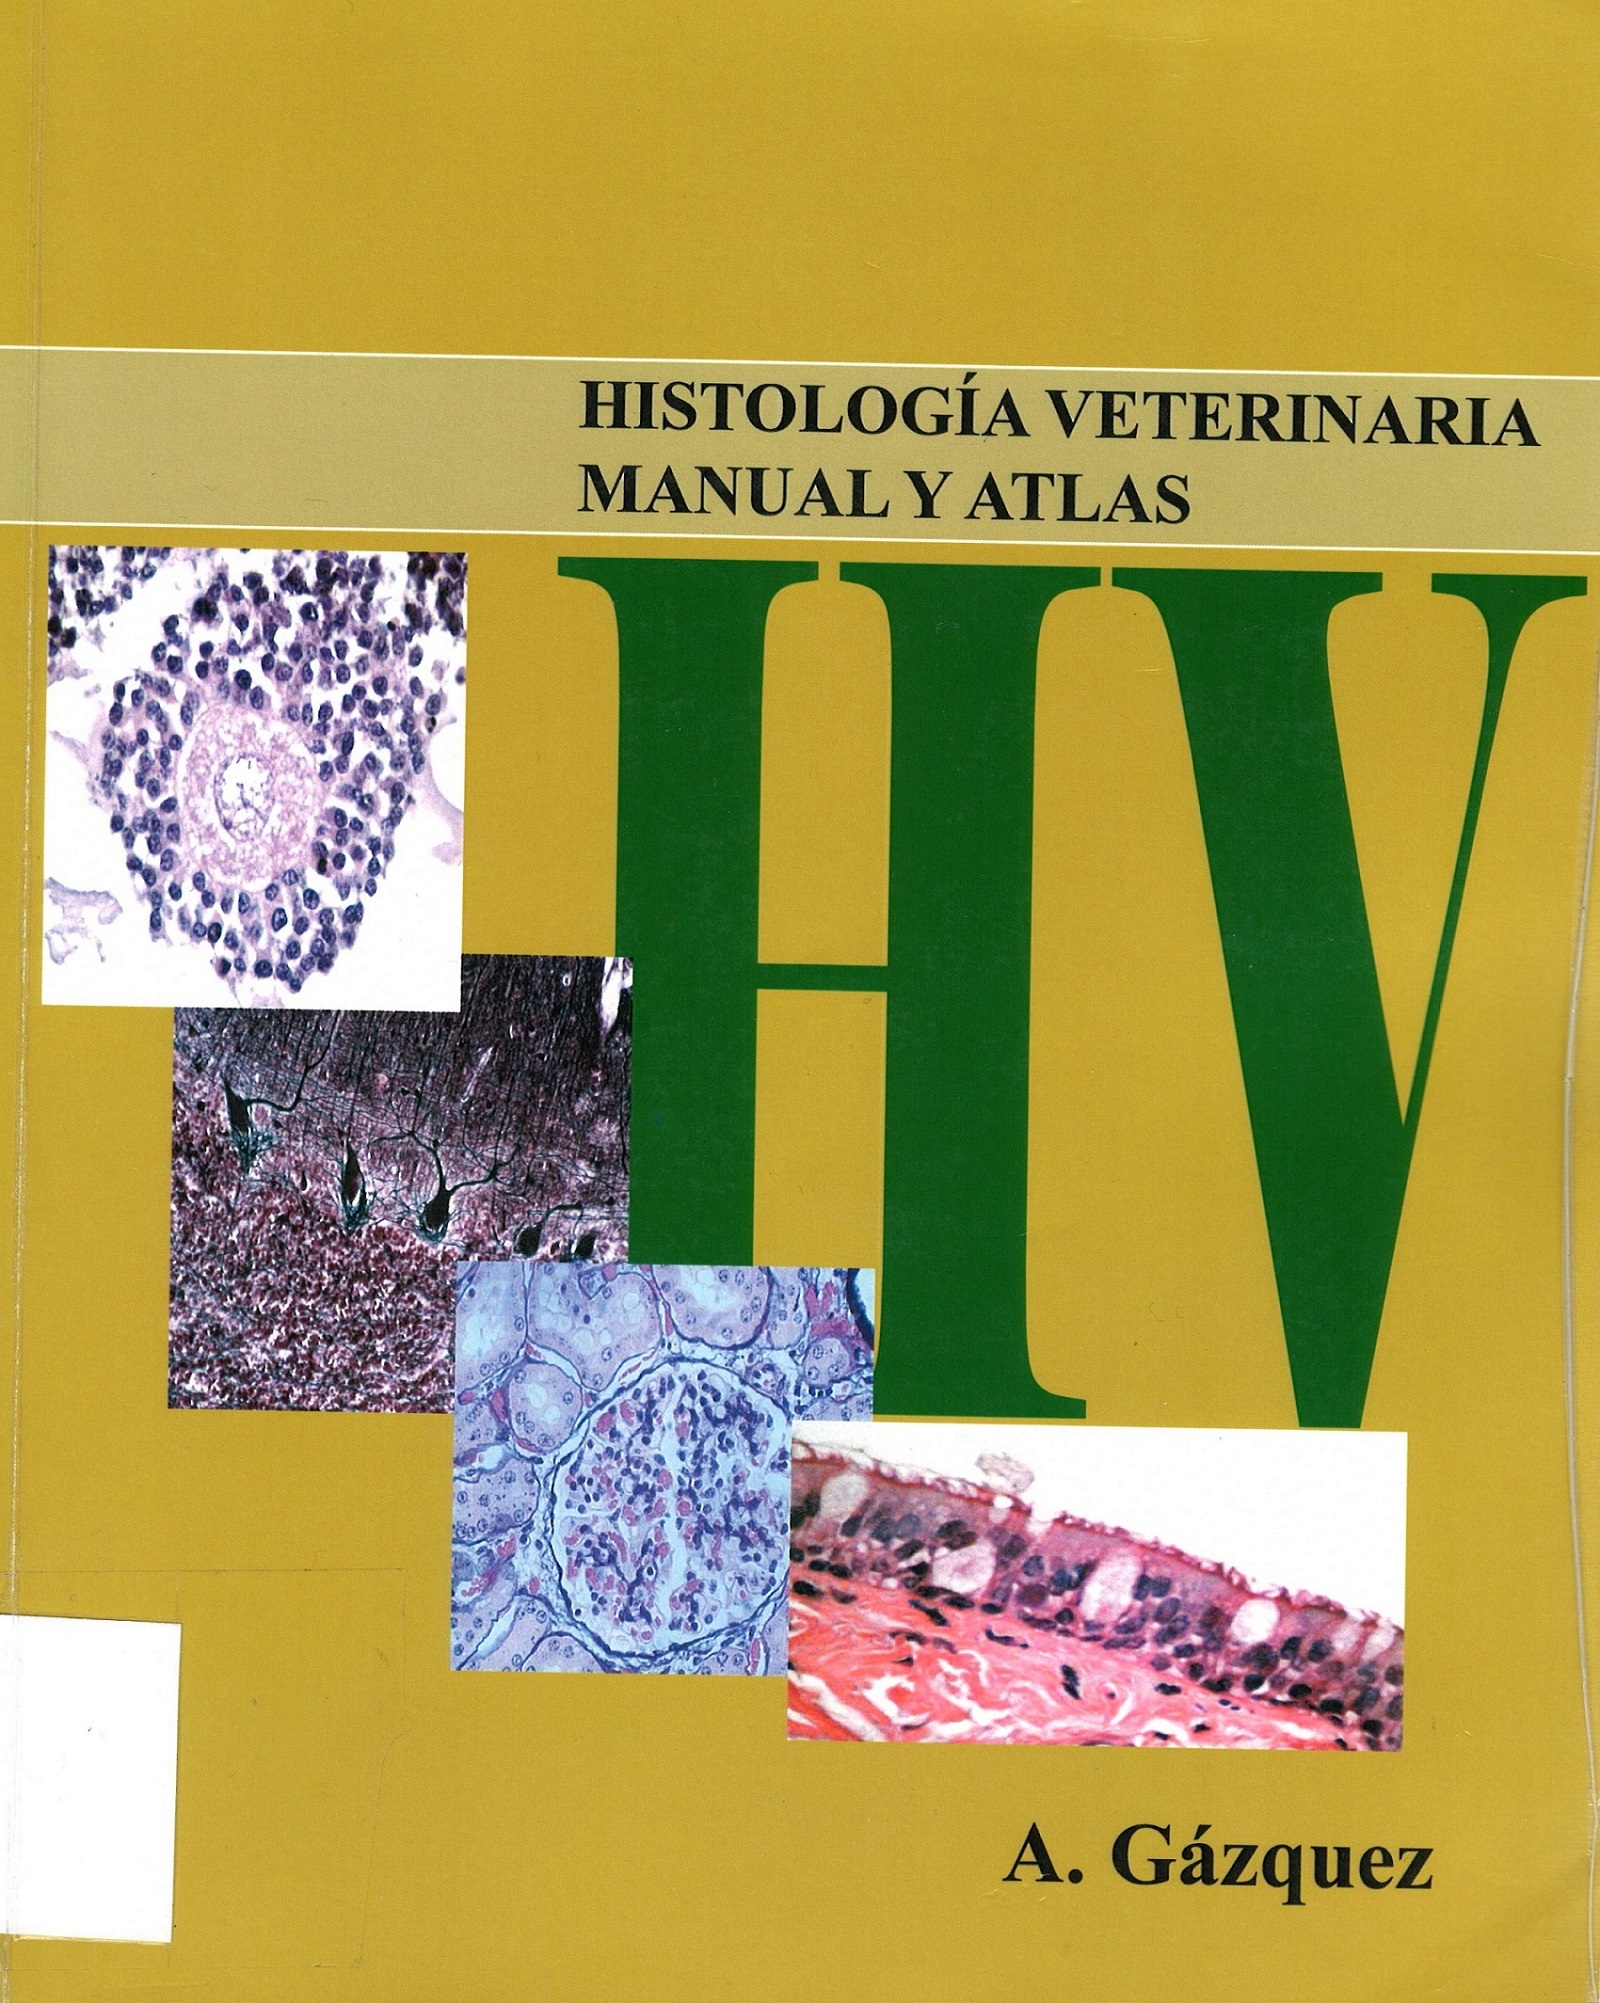 Imagen de portada del libro Histología veterinaria